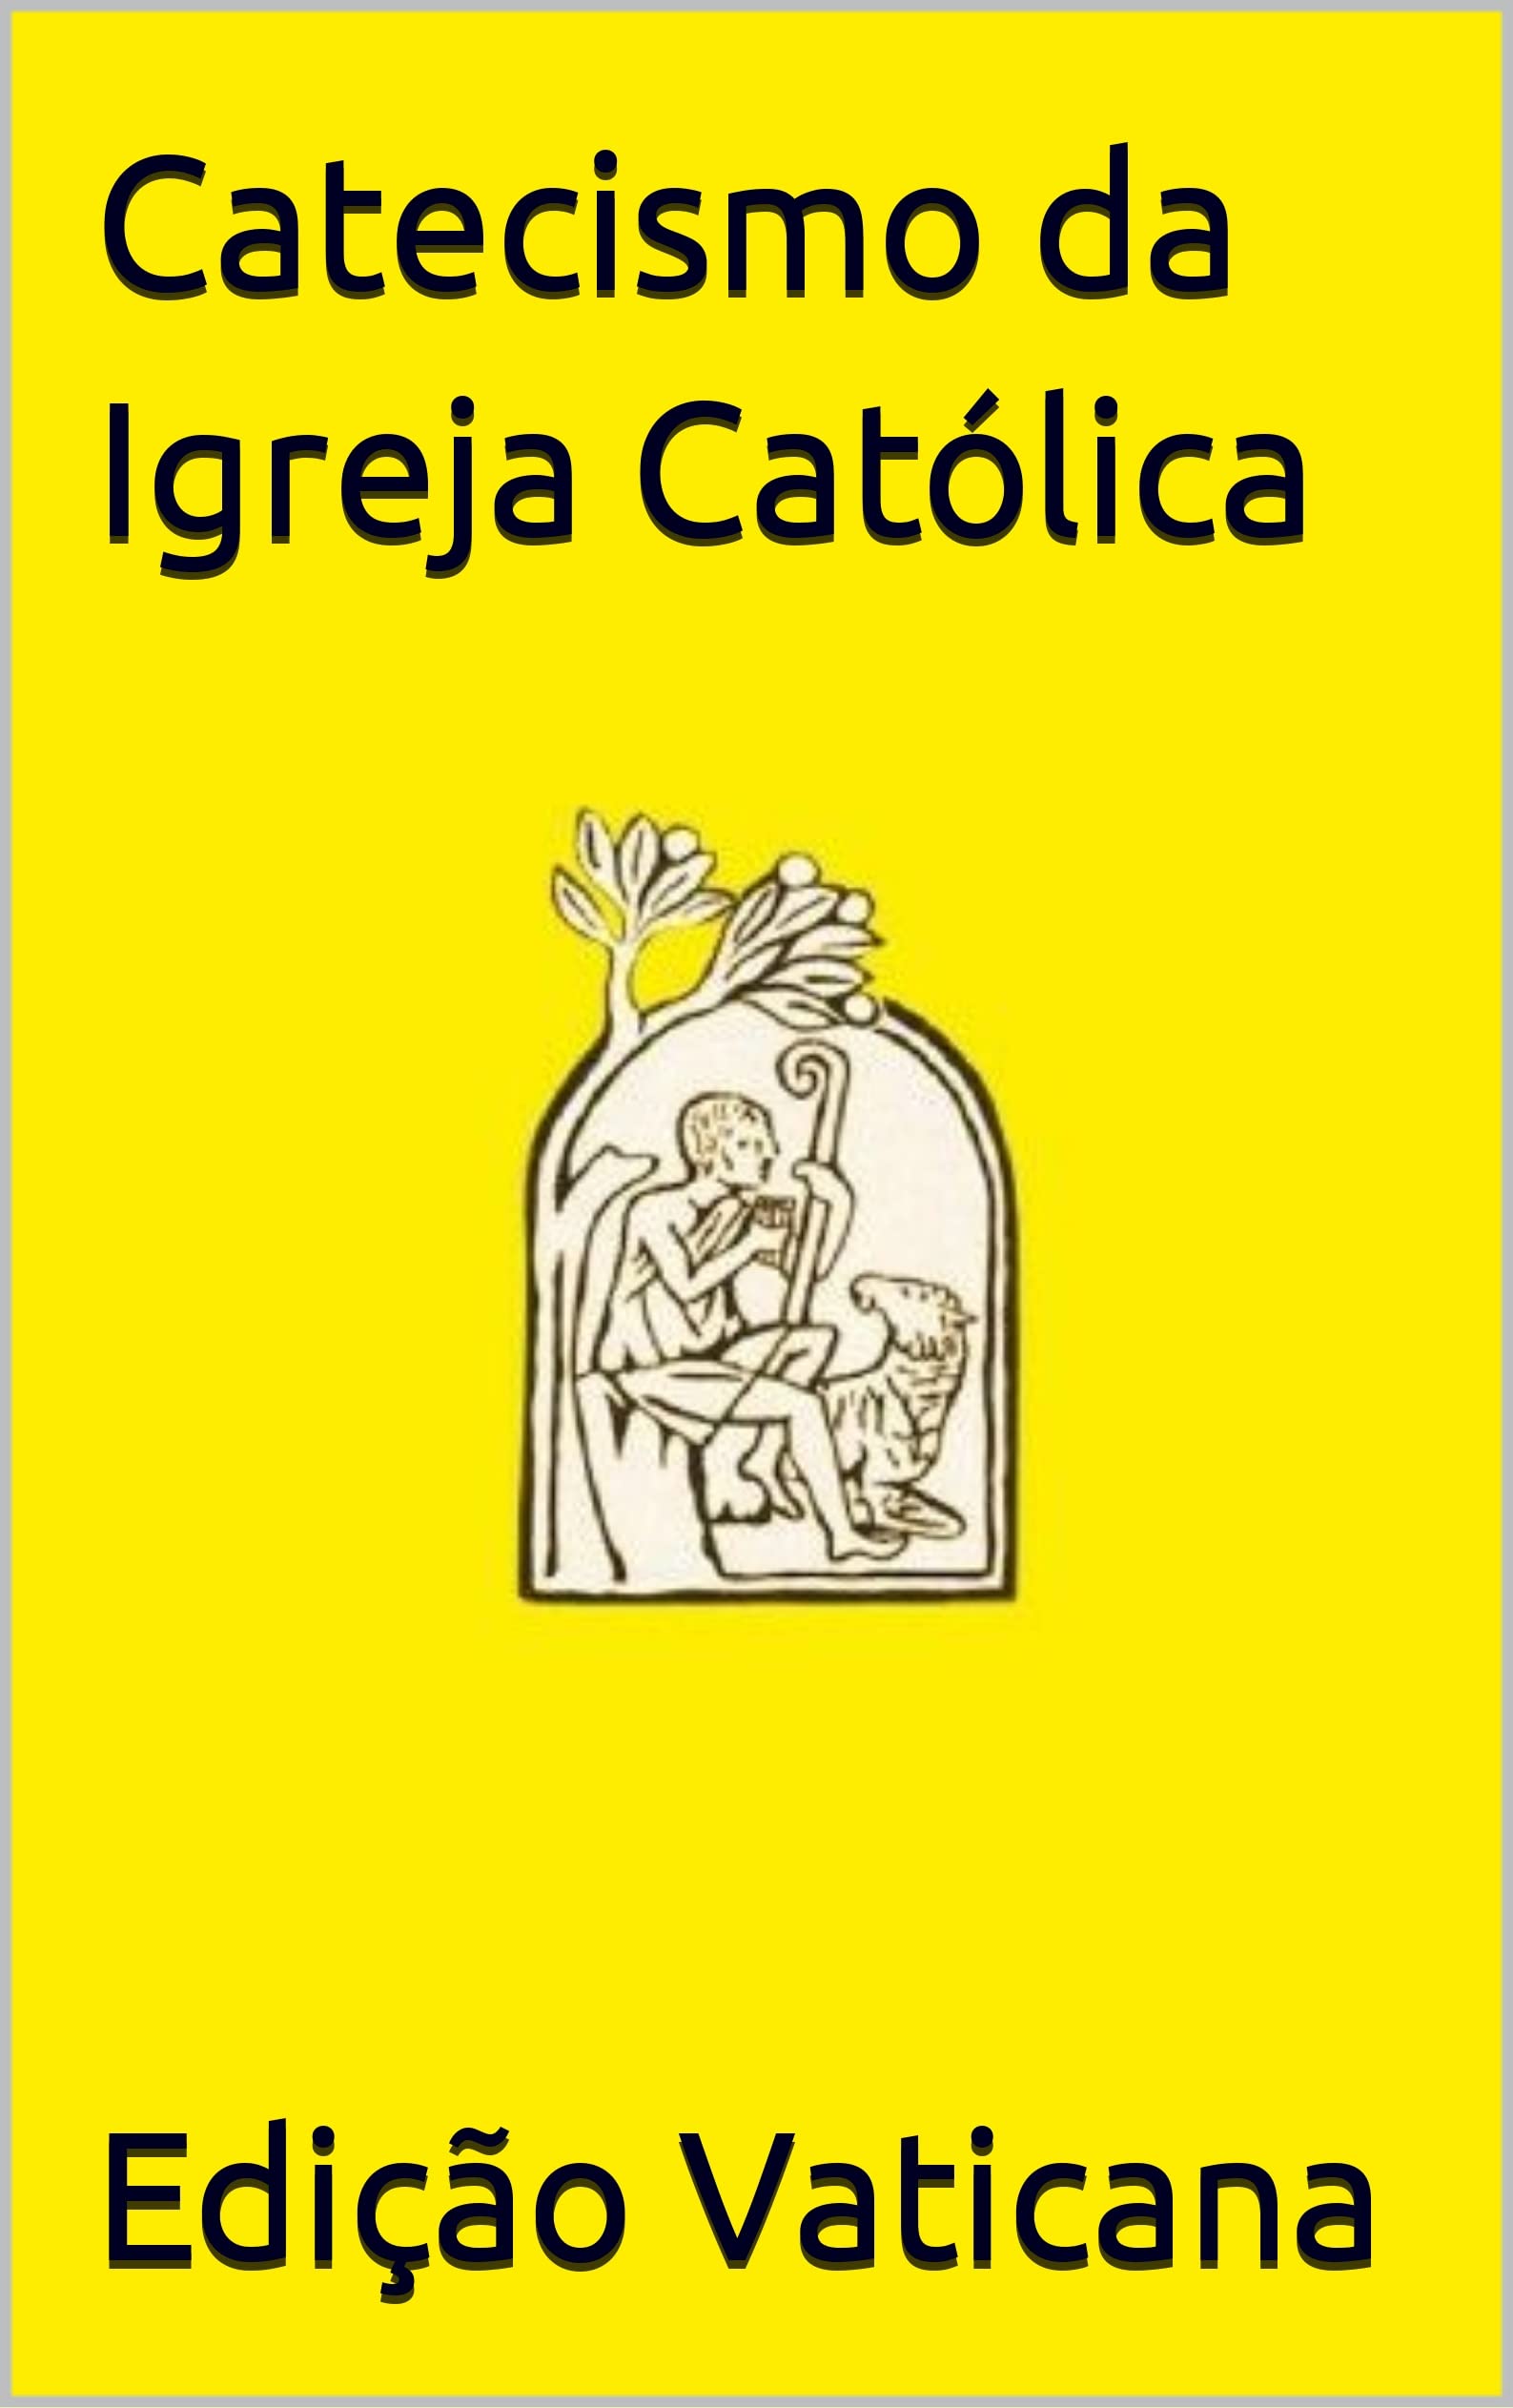 Catecismo da Igreja Católica (Portuguese Edition)